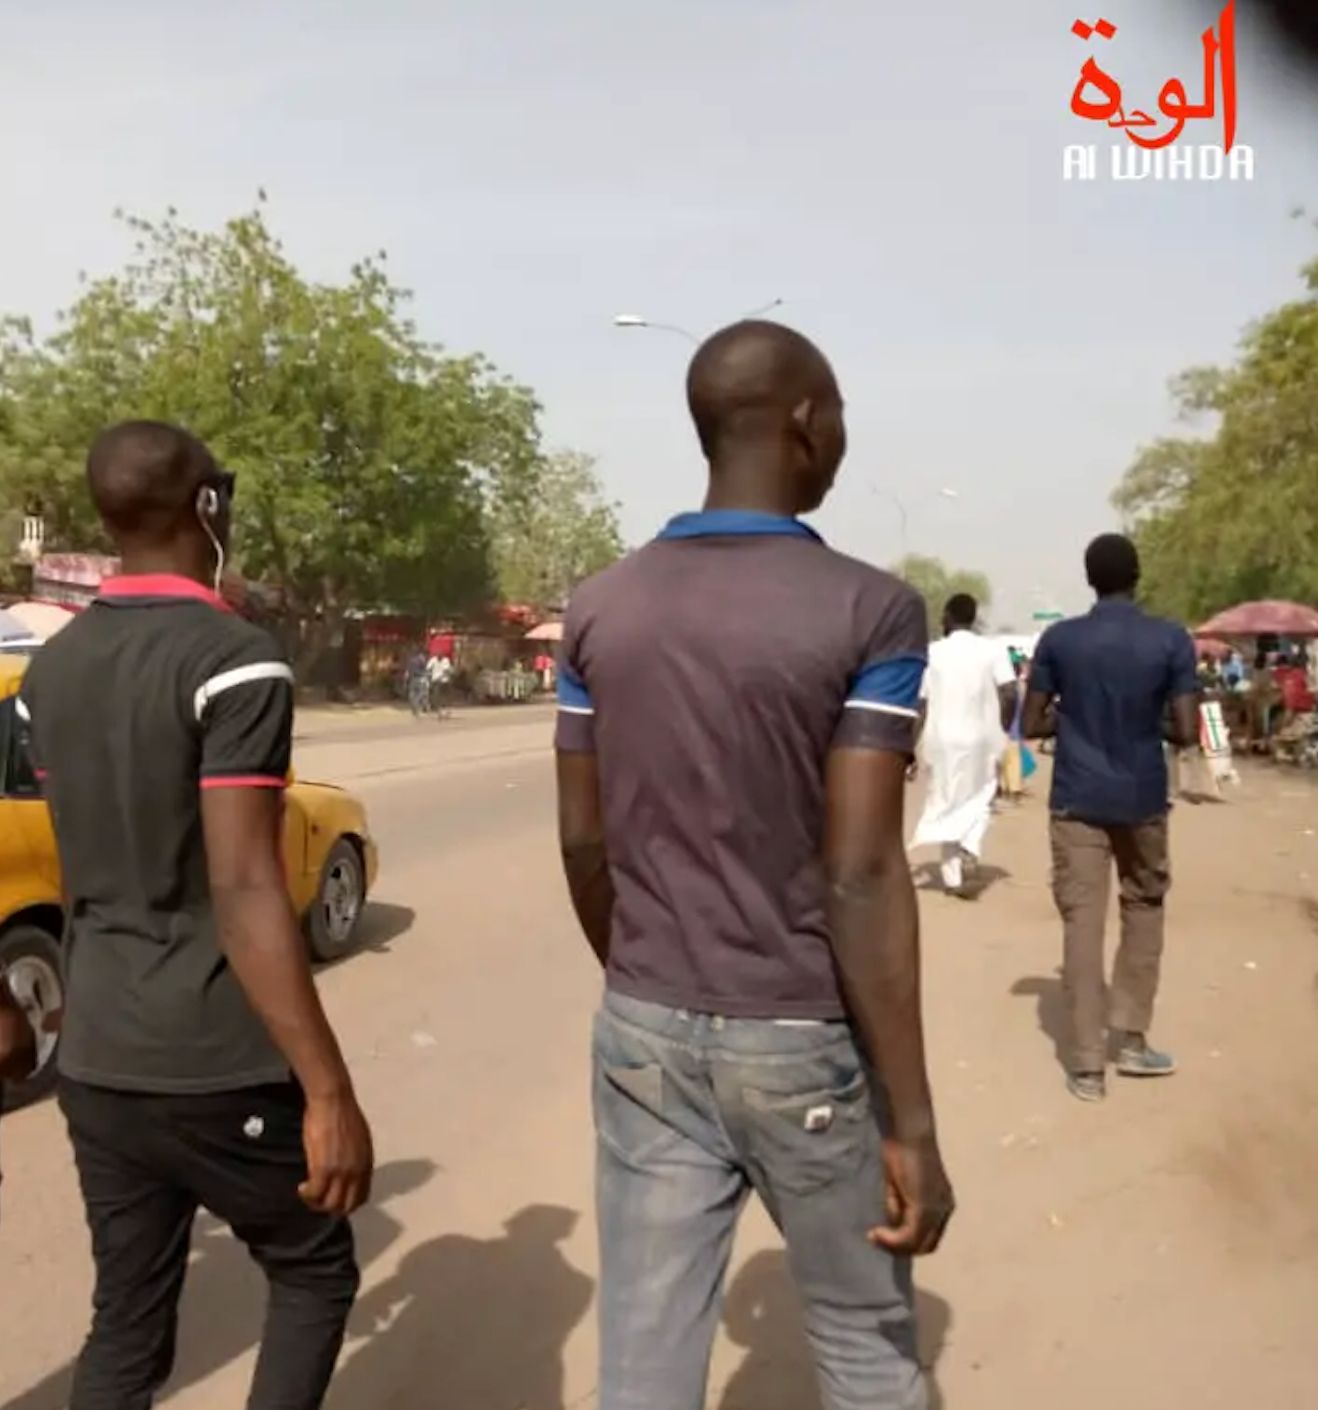 Tchad : à cause du chômage endémique, des jeunes Tchadiens en quête de l'Eldorado